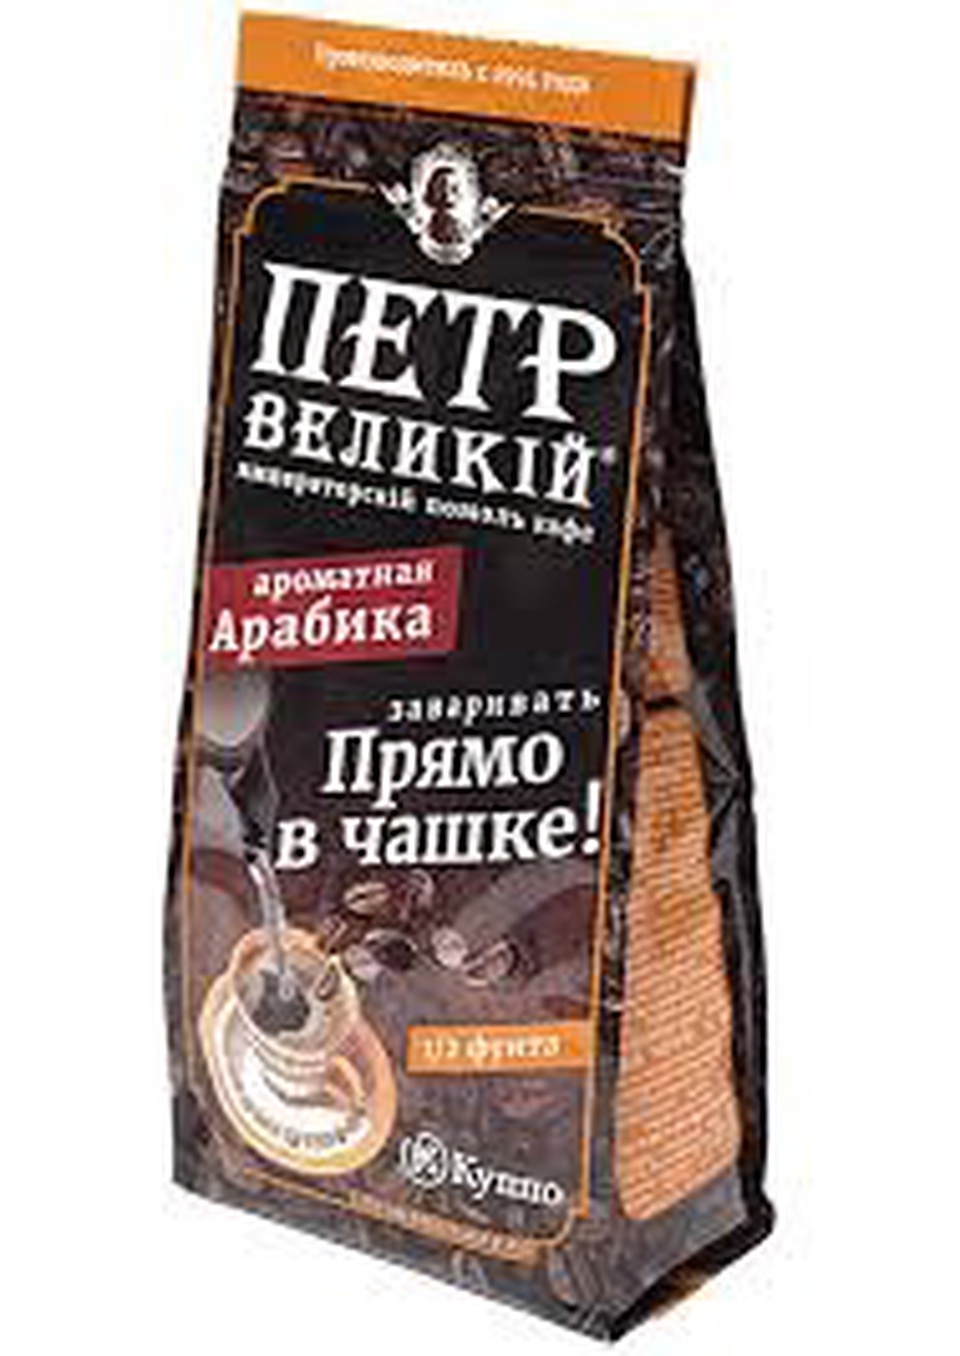 Кофе Пётр Великий "В ЧАШКУ" 204г - 217,26 ₽, заказать онлайн.